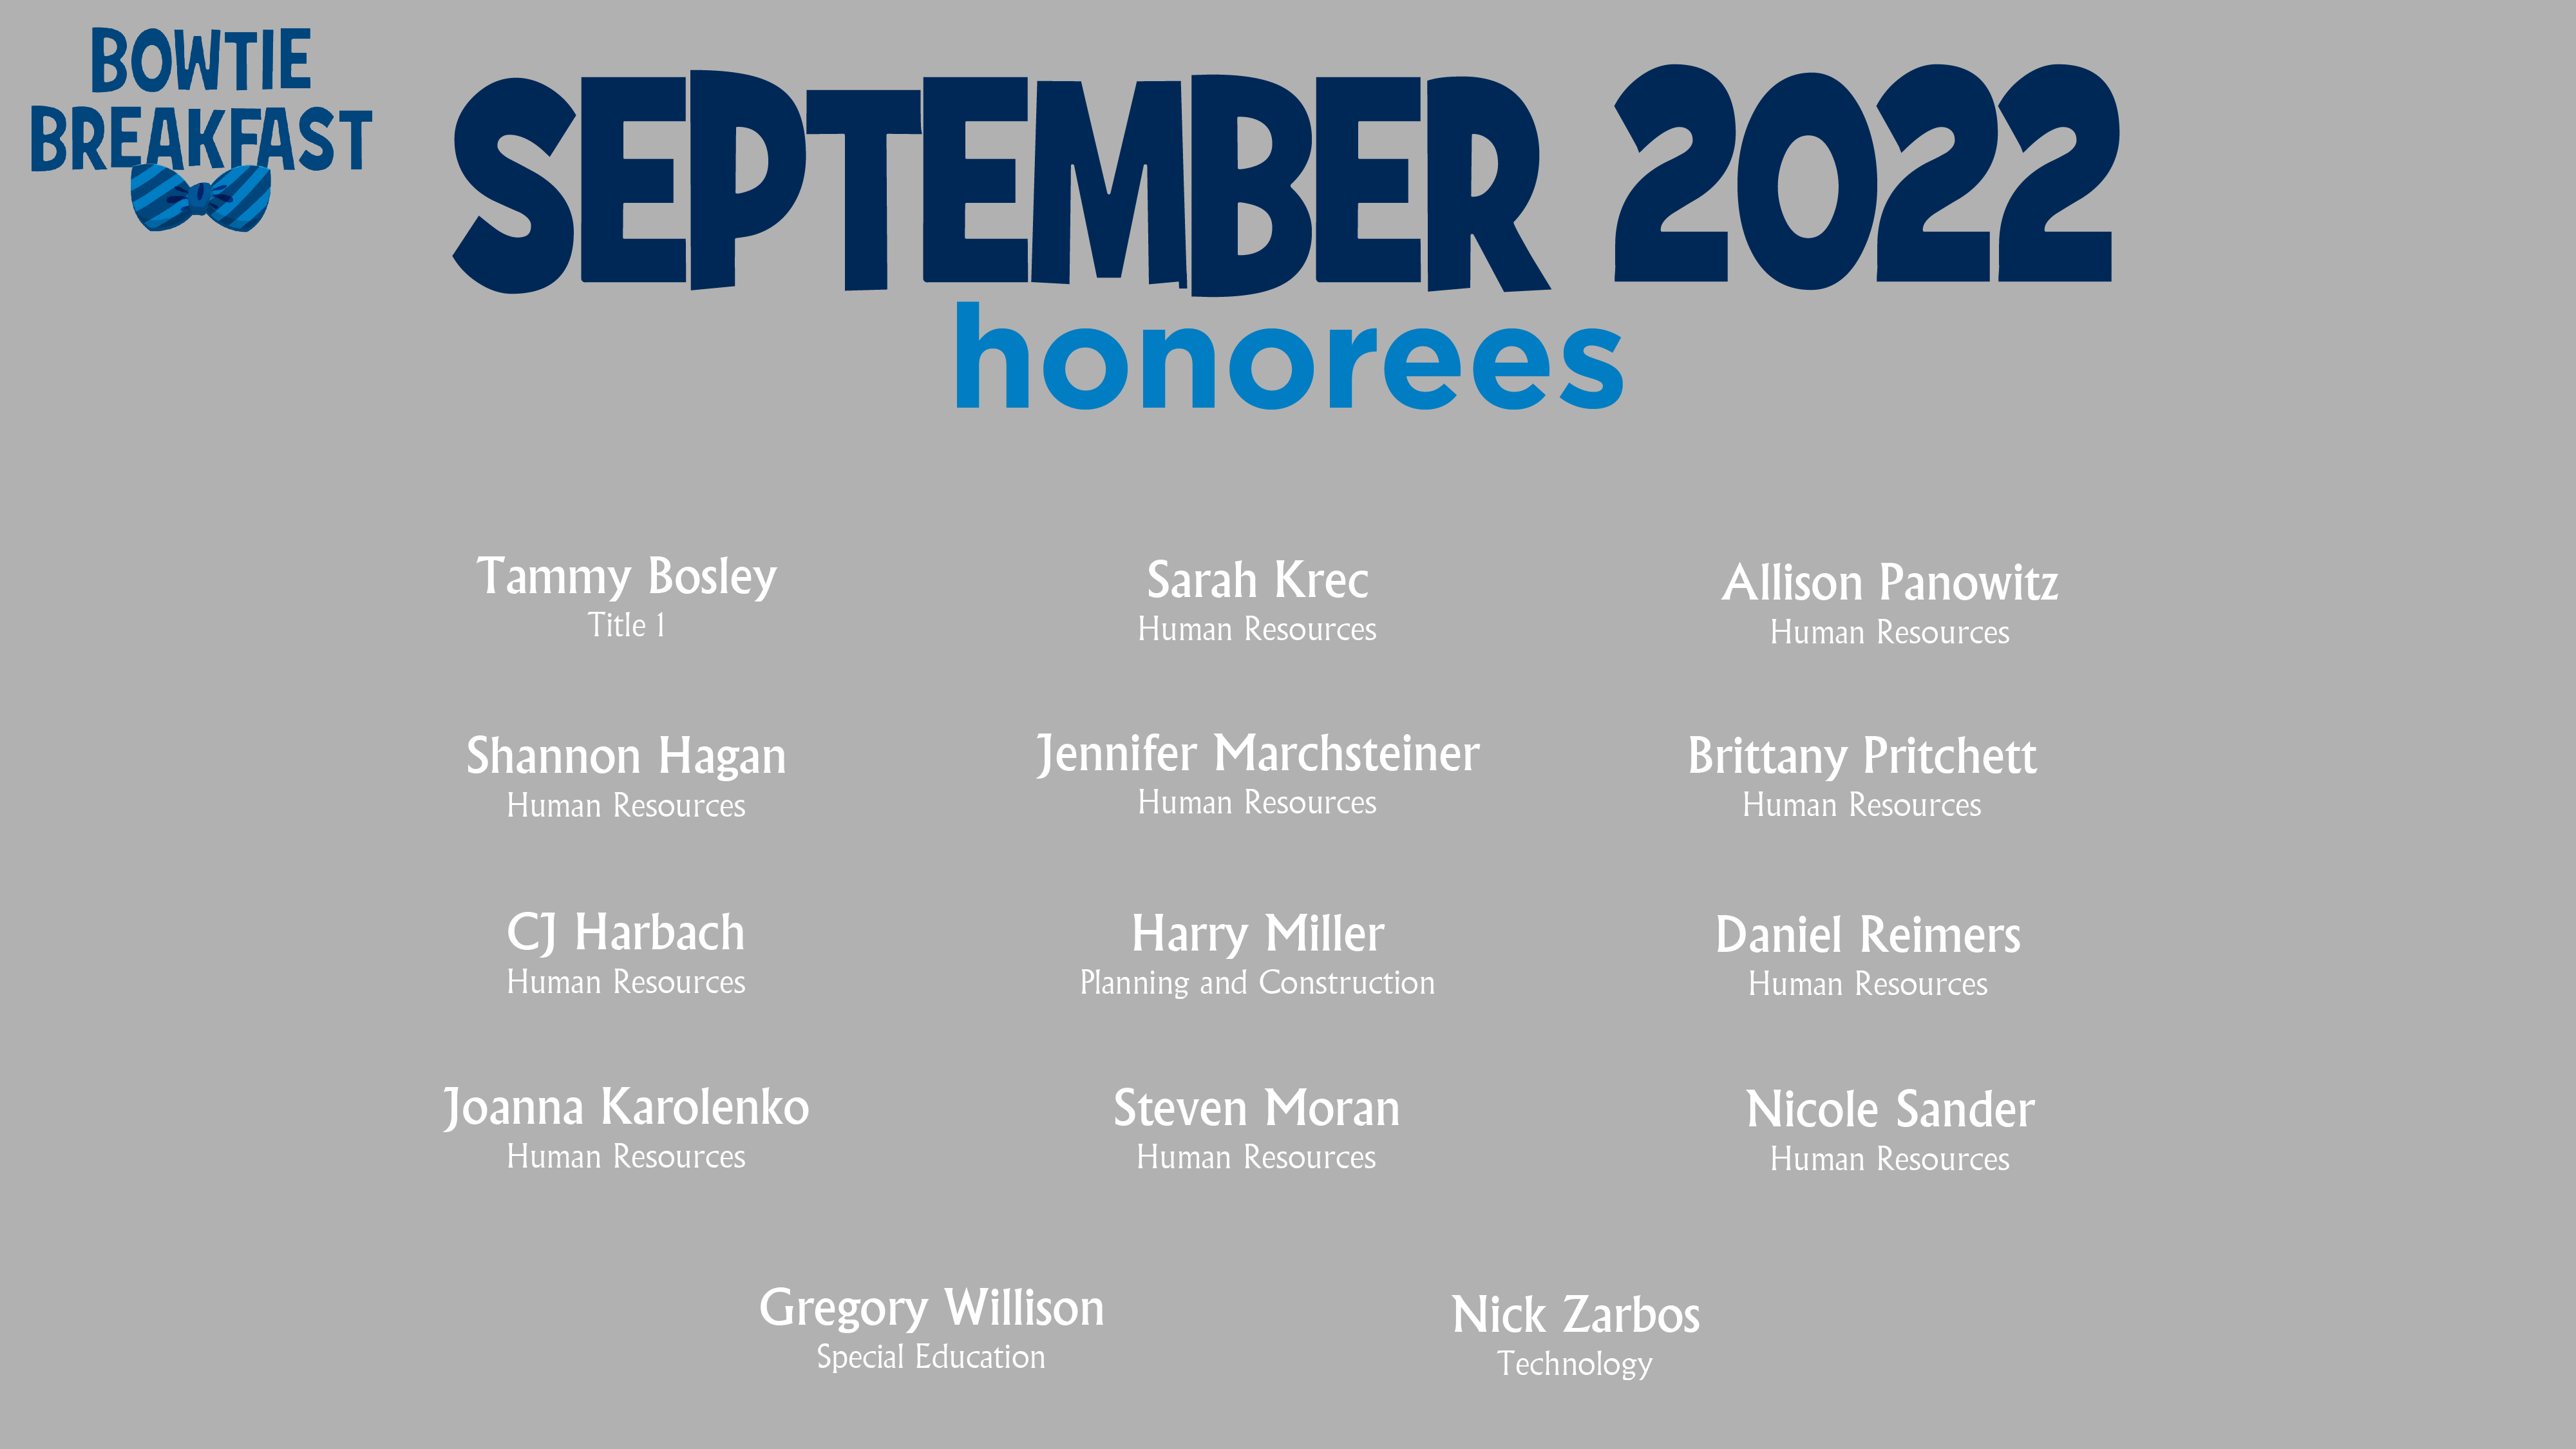 HCPS Bowtie Breakfast Honorees - September 2022